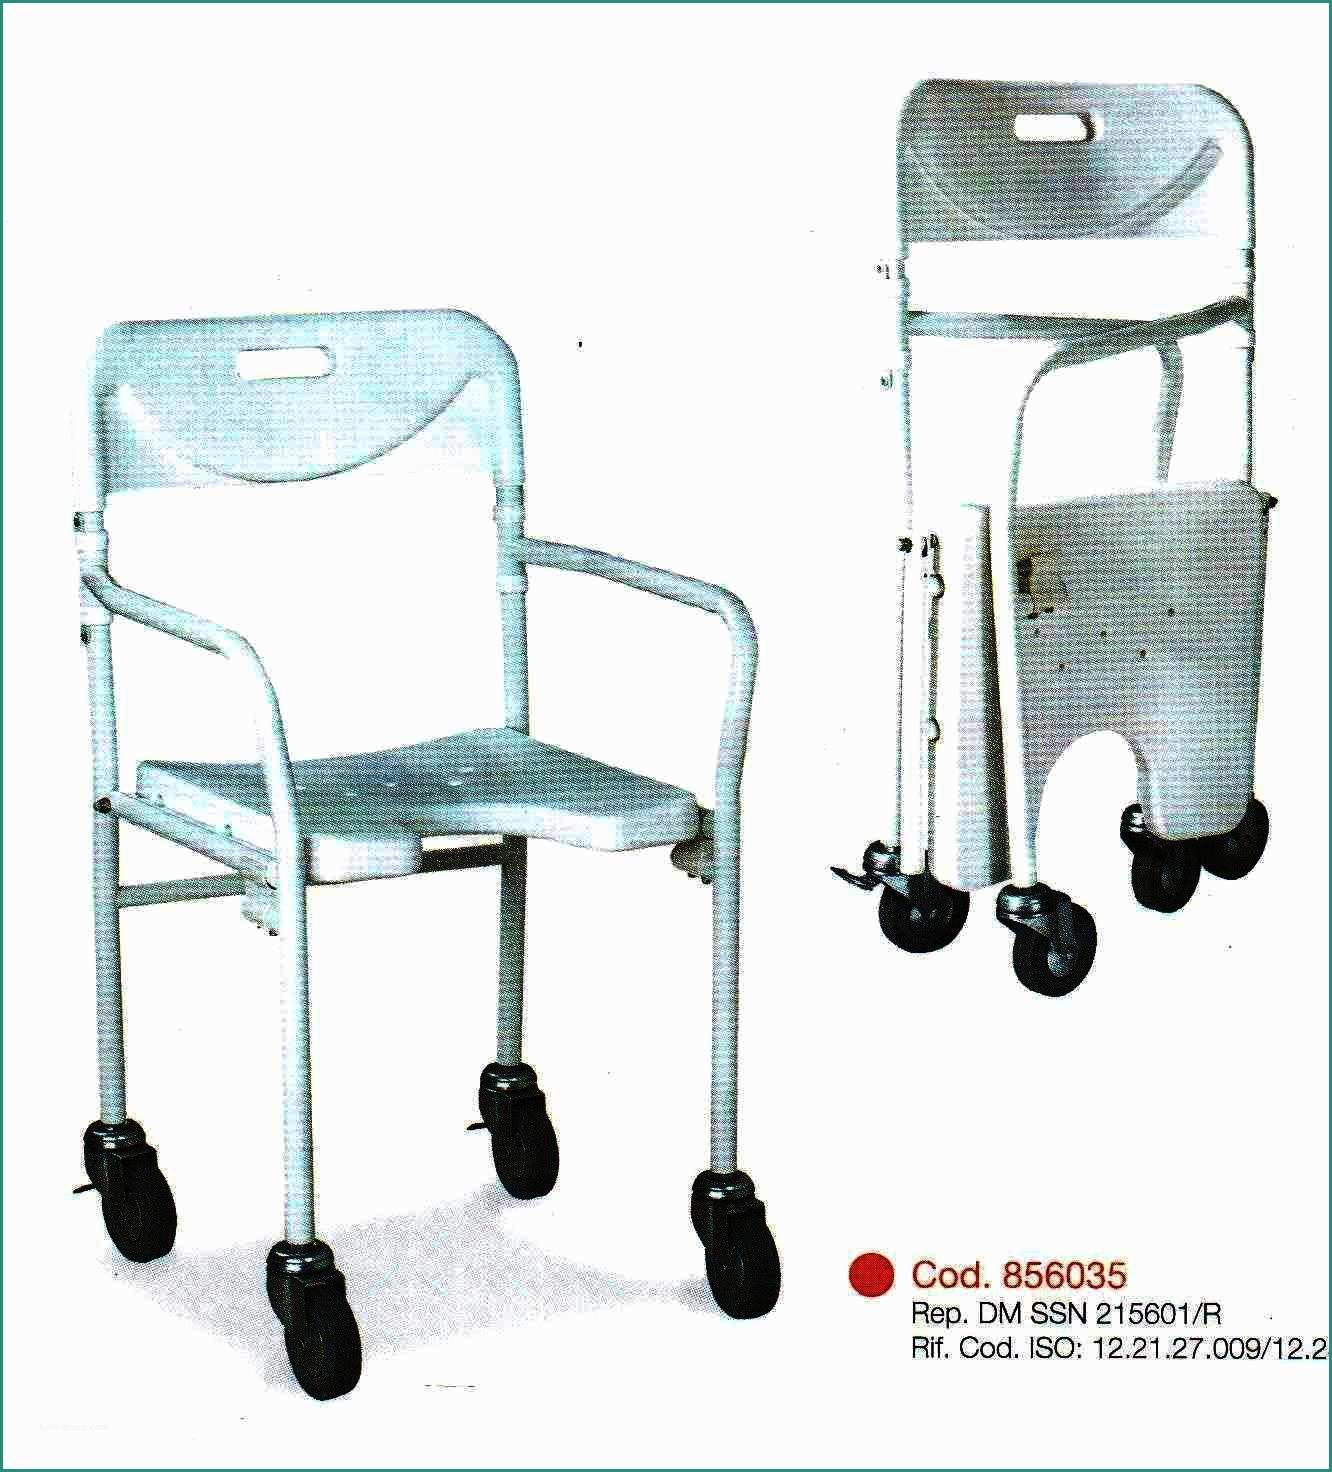 Carrozzine Pieghevoli Per Disabili E Sedia Da Doccia Mod Pieghevole Vendita Online Su Prodotti ortopedici